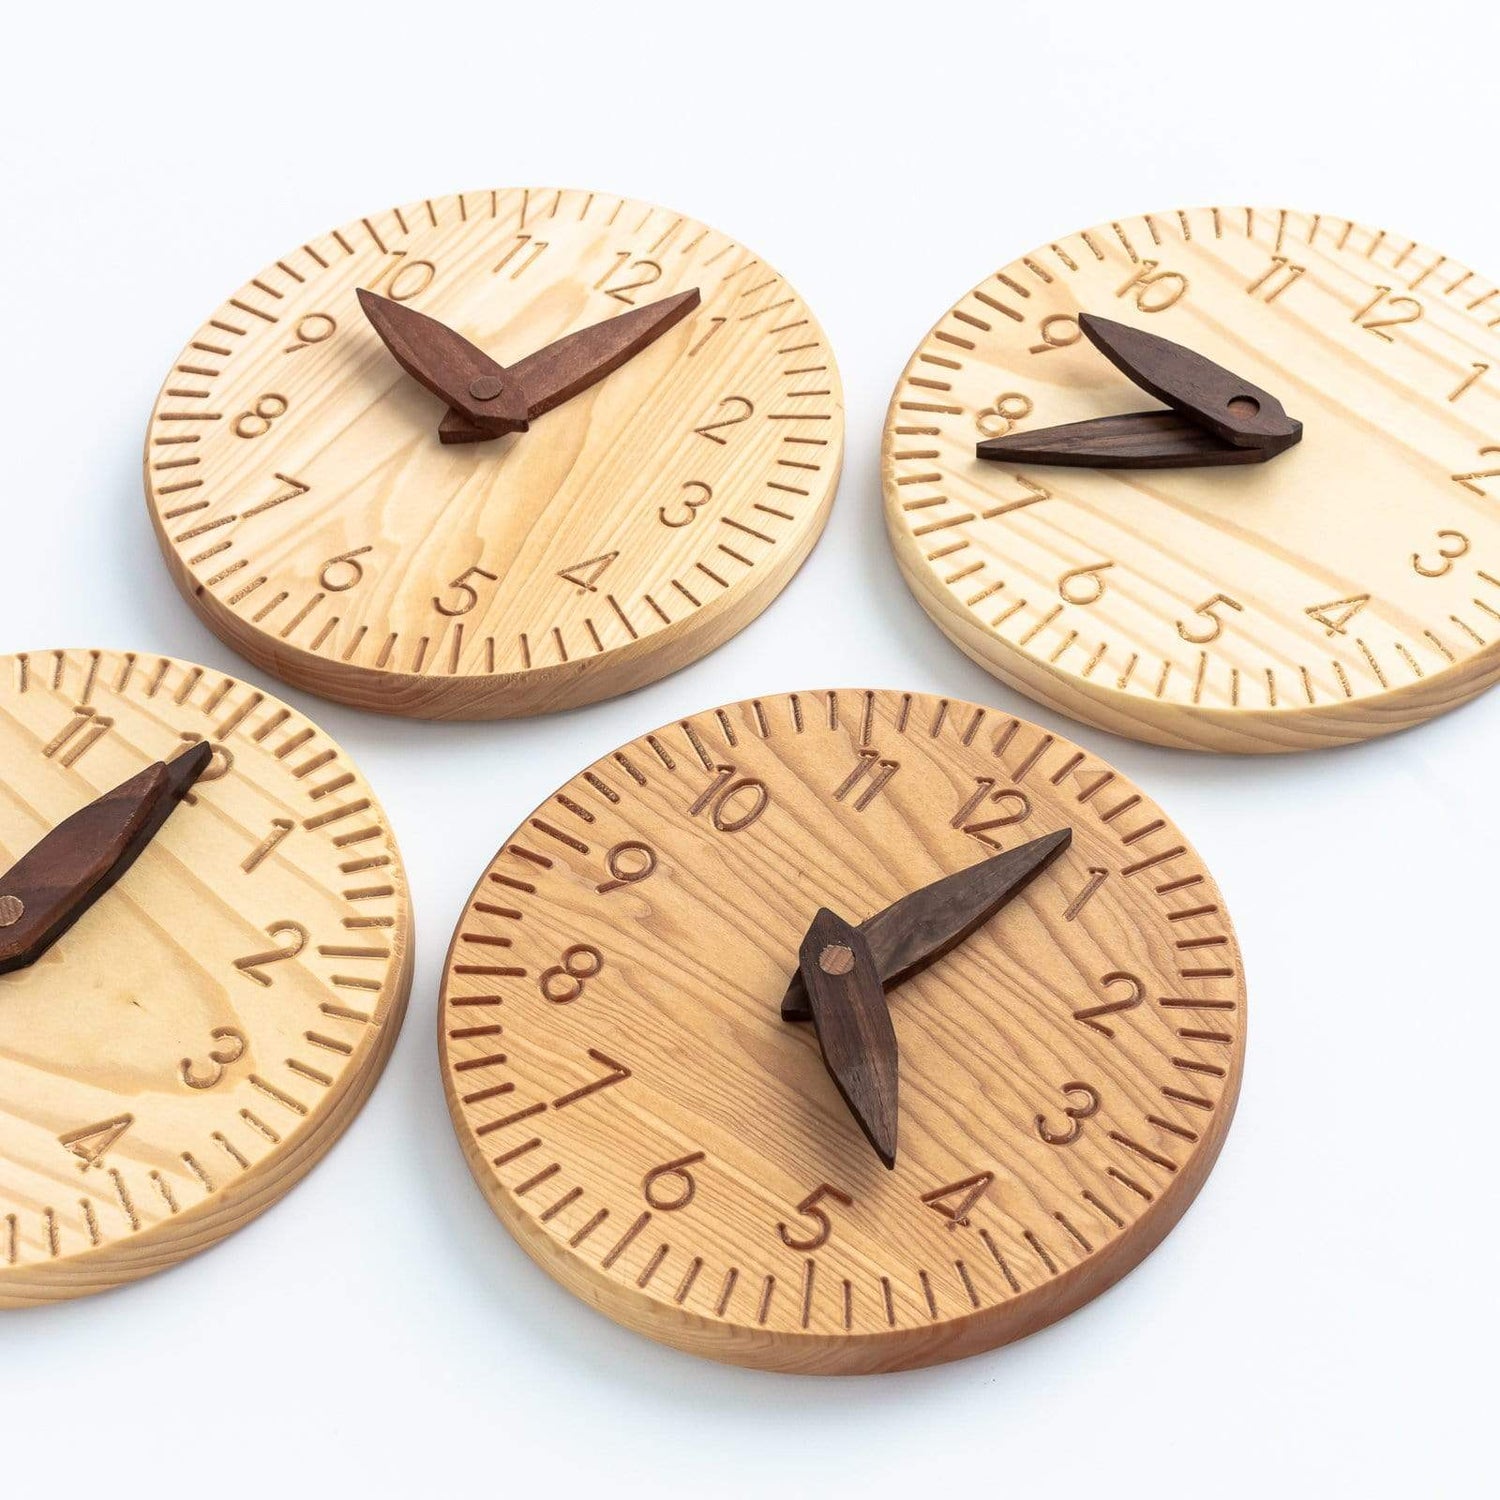 Oyuncak House Wooden Toys Handmade Wooden Clock